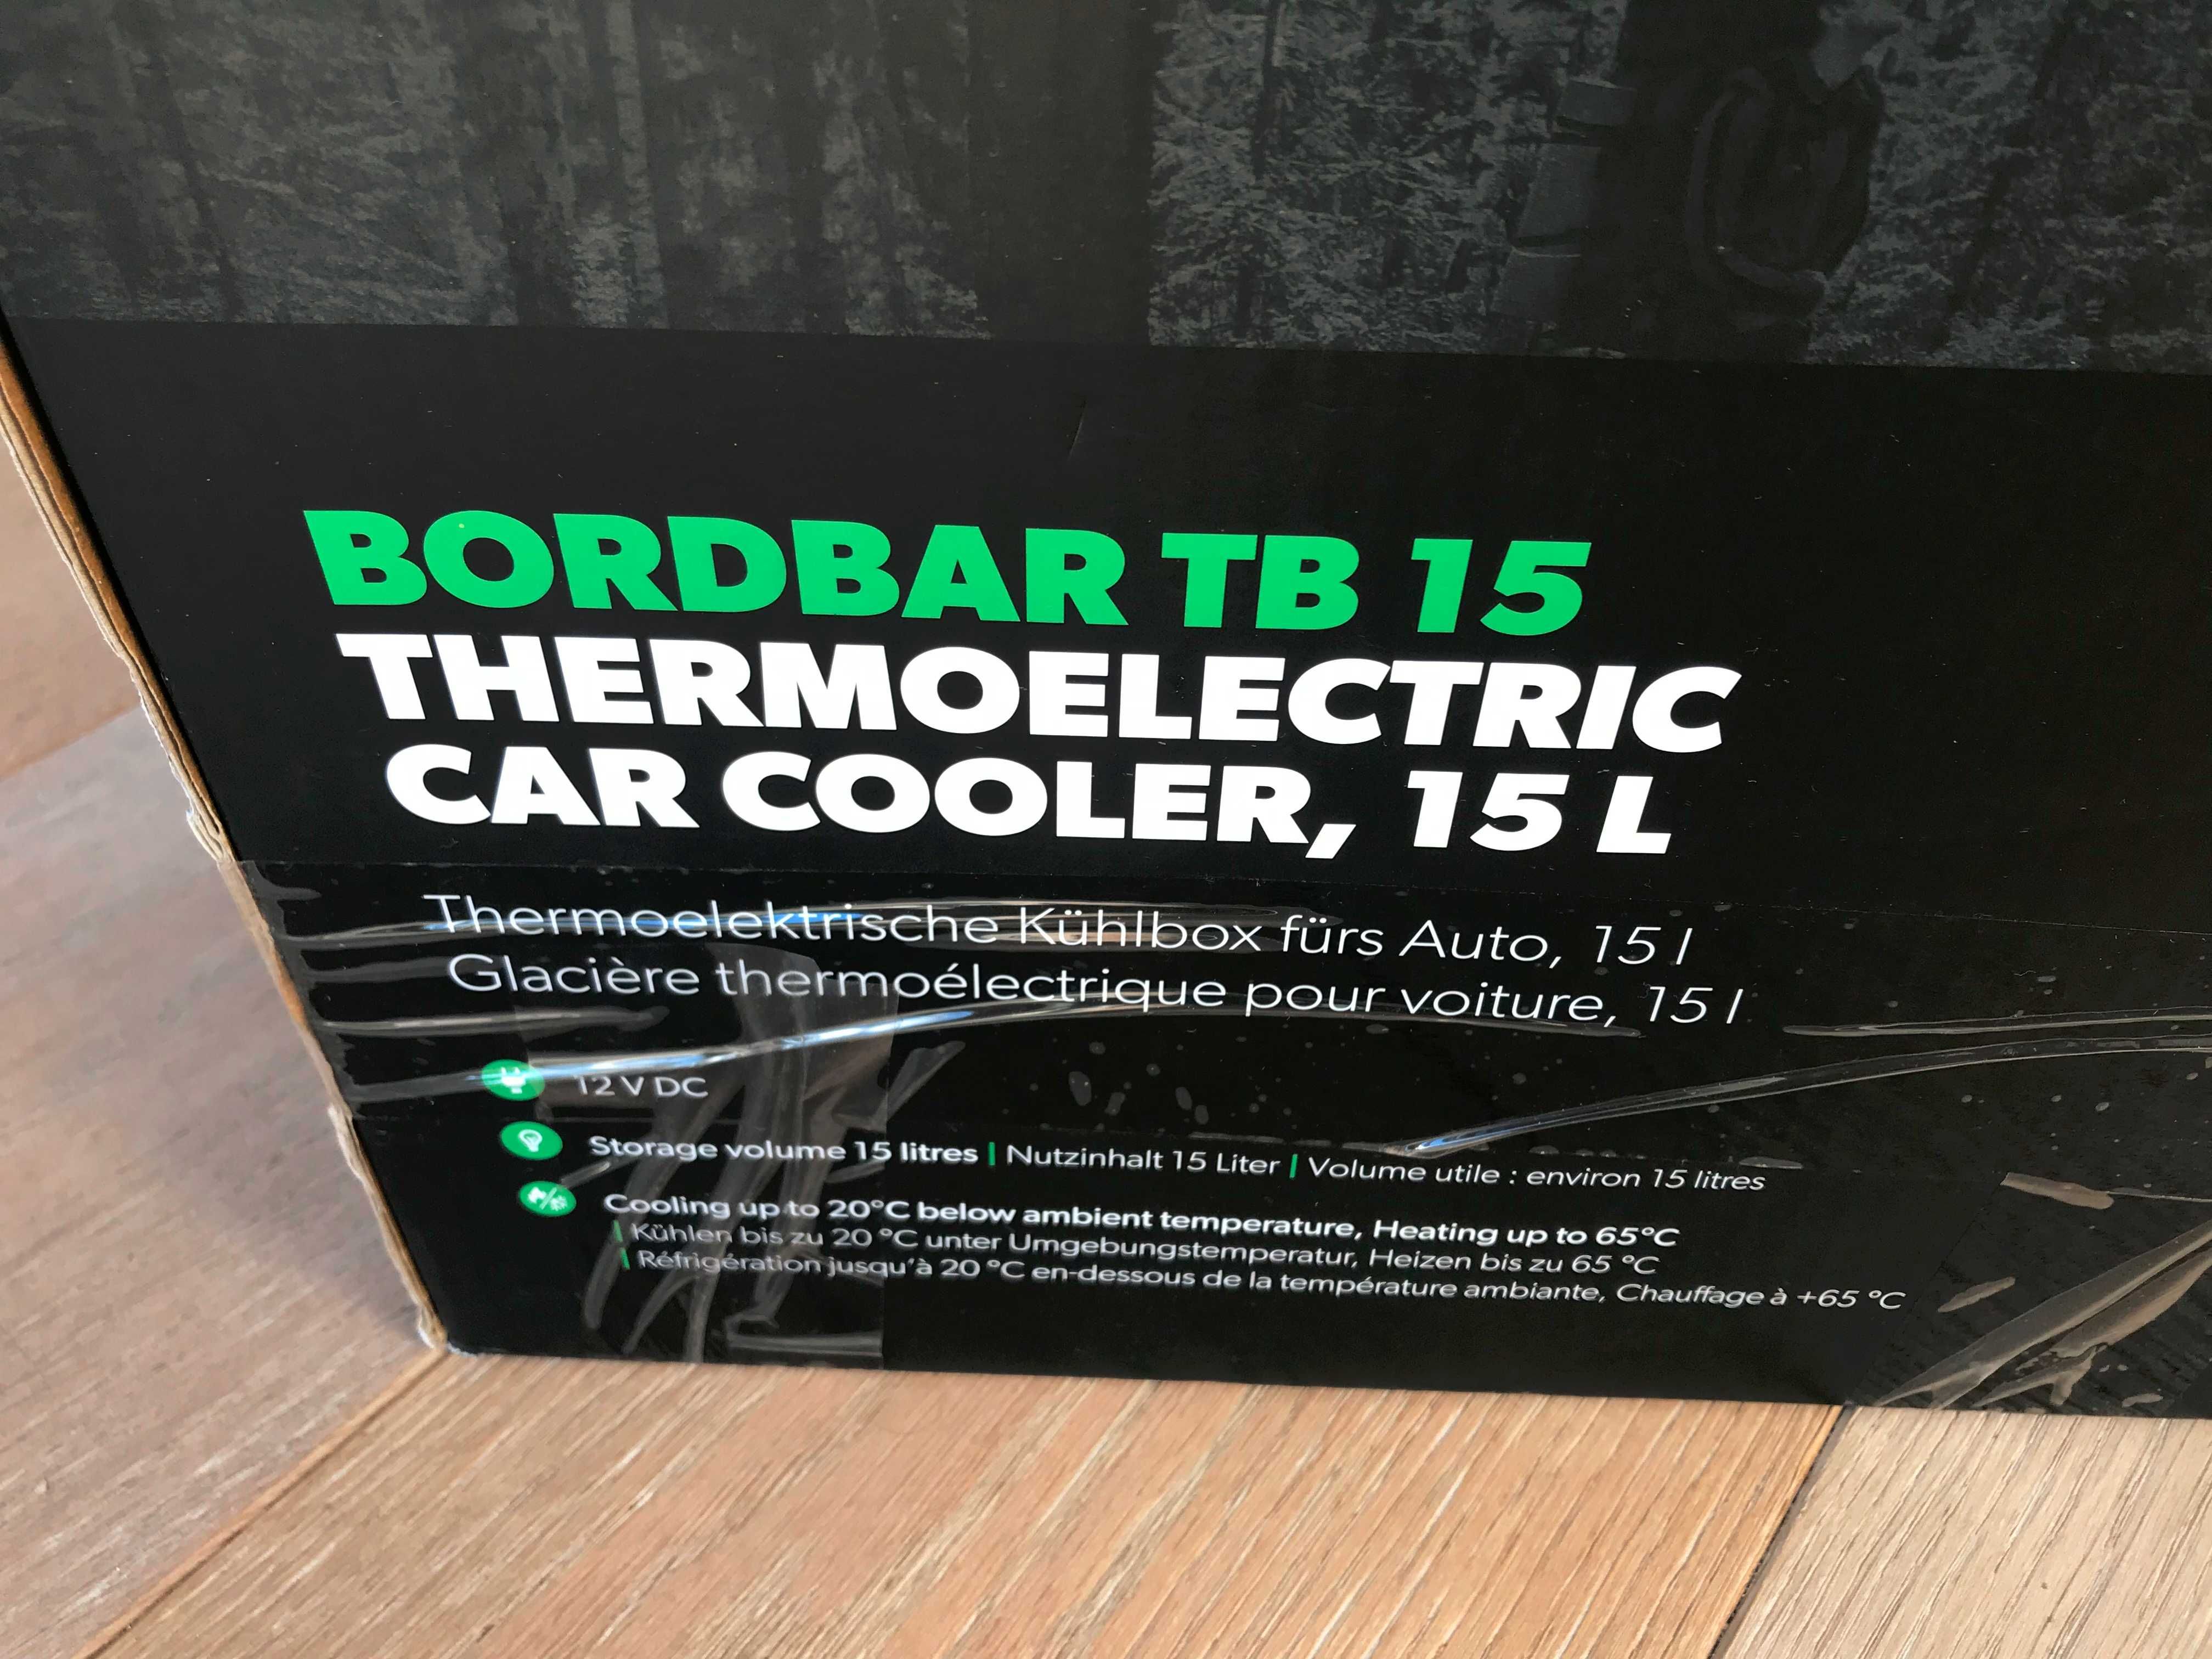 Termoelektryczna lodówka samochodowa, 15 l Dometic BordBar TB 15